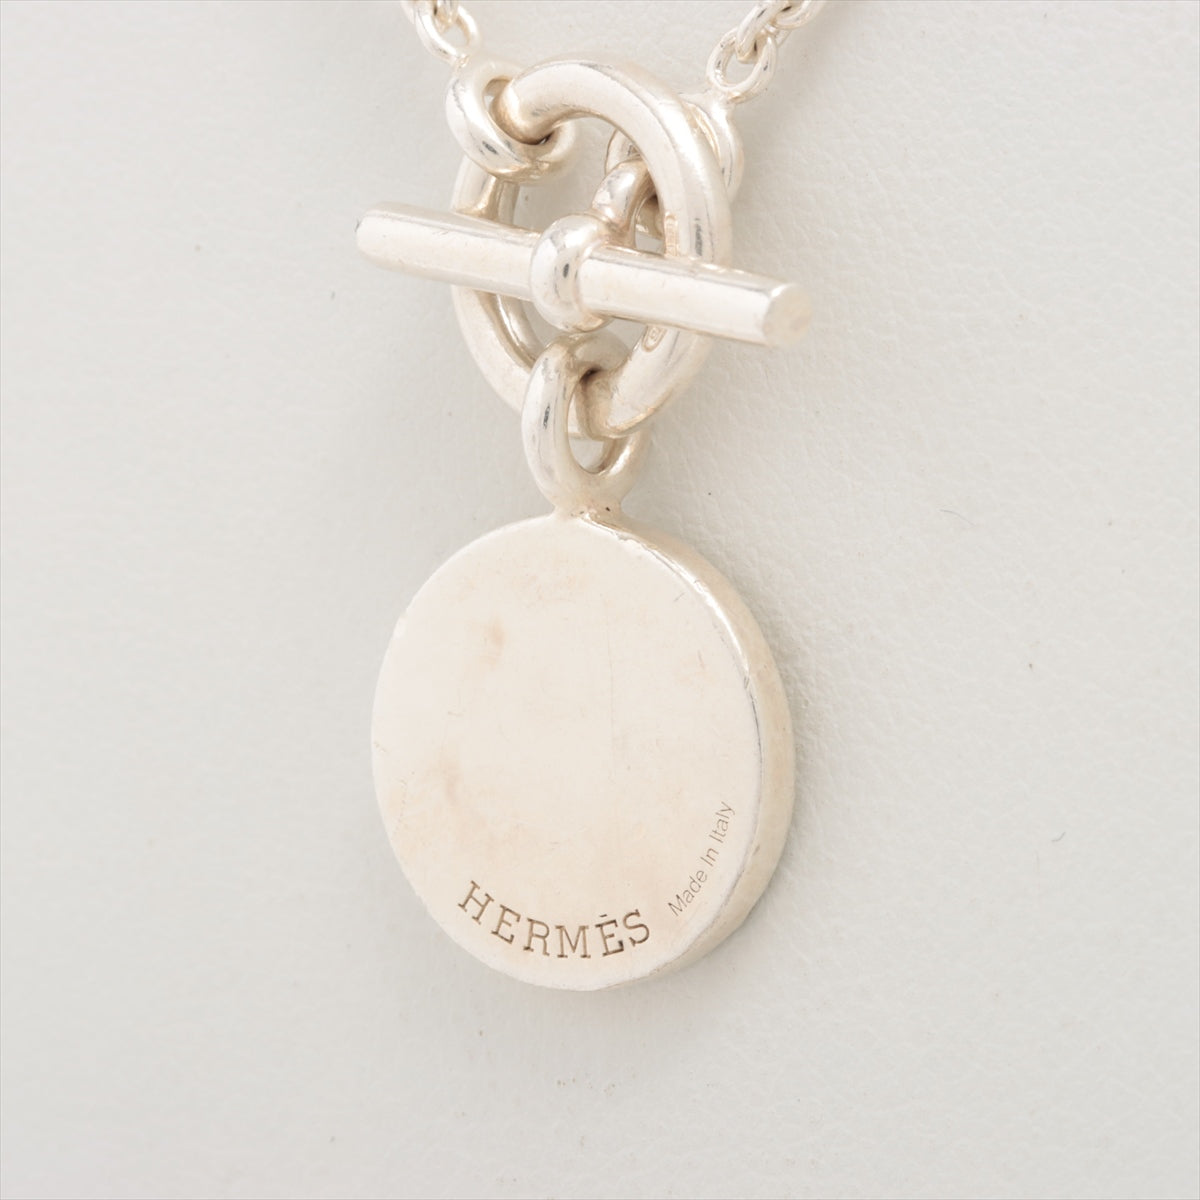 Hermès Necklace 925 10.0g Silver Amulet H Confetti